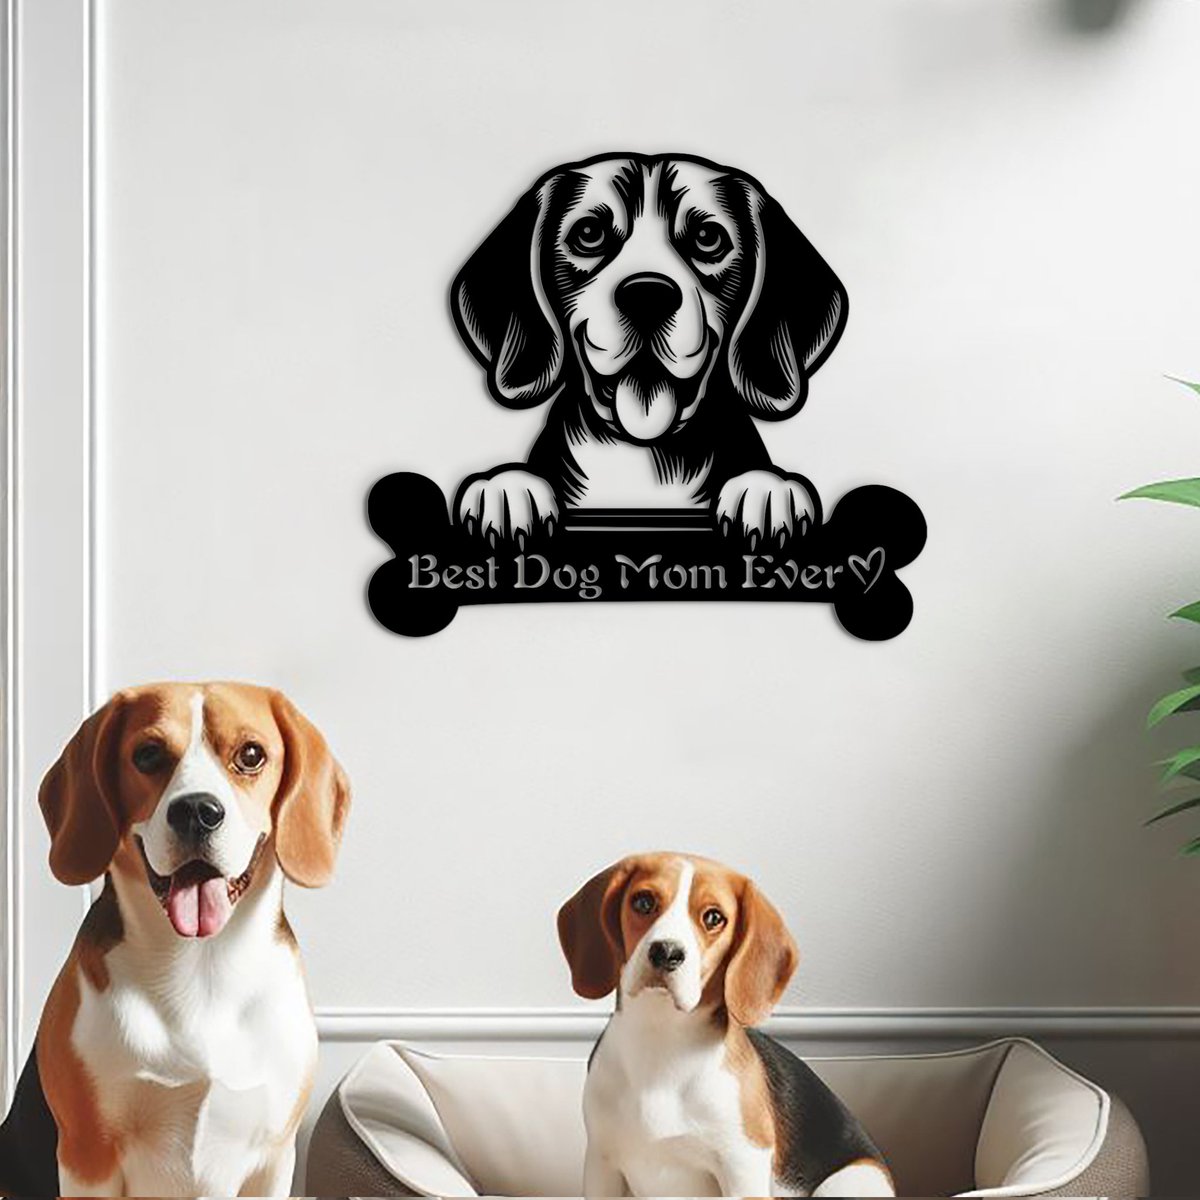 Best dog mom ever. Beagle mom gift Message for other dog breeds. woodyardstore.etsy.com/listing/170134… #dogmom #beagle #beaglemom #doglover #dogowner #dogoftheday